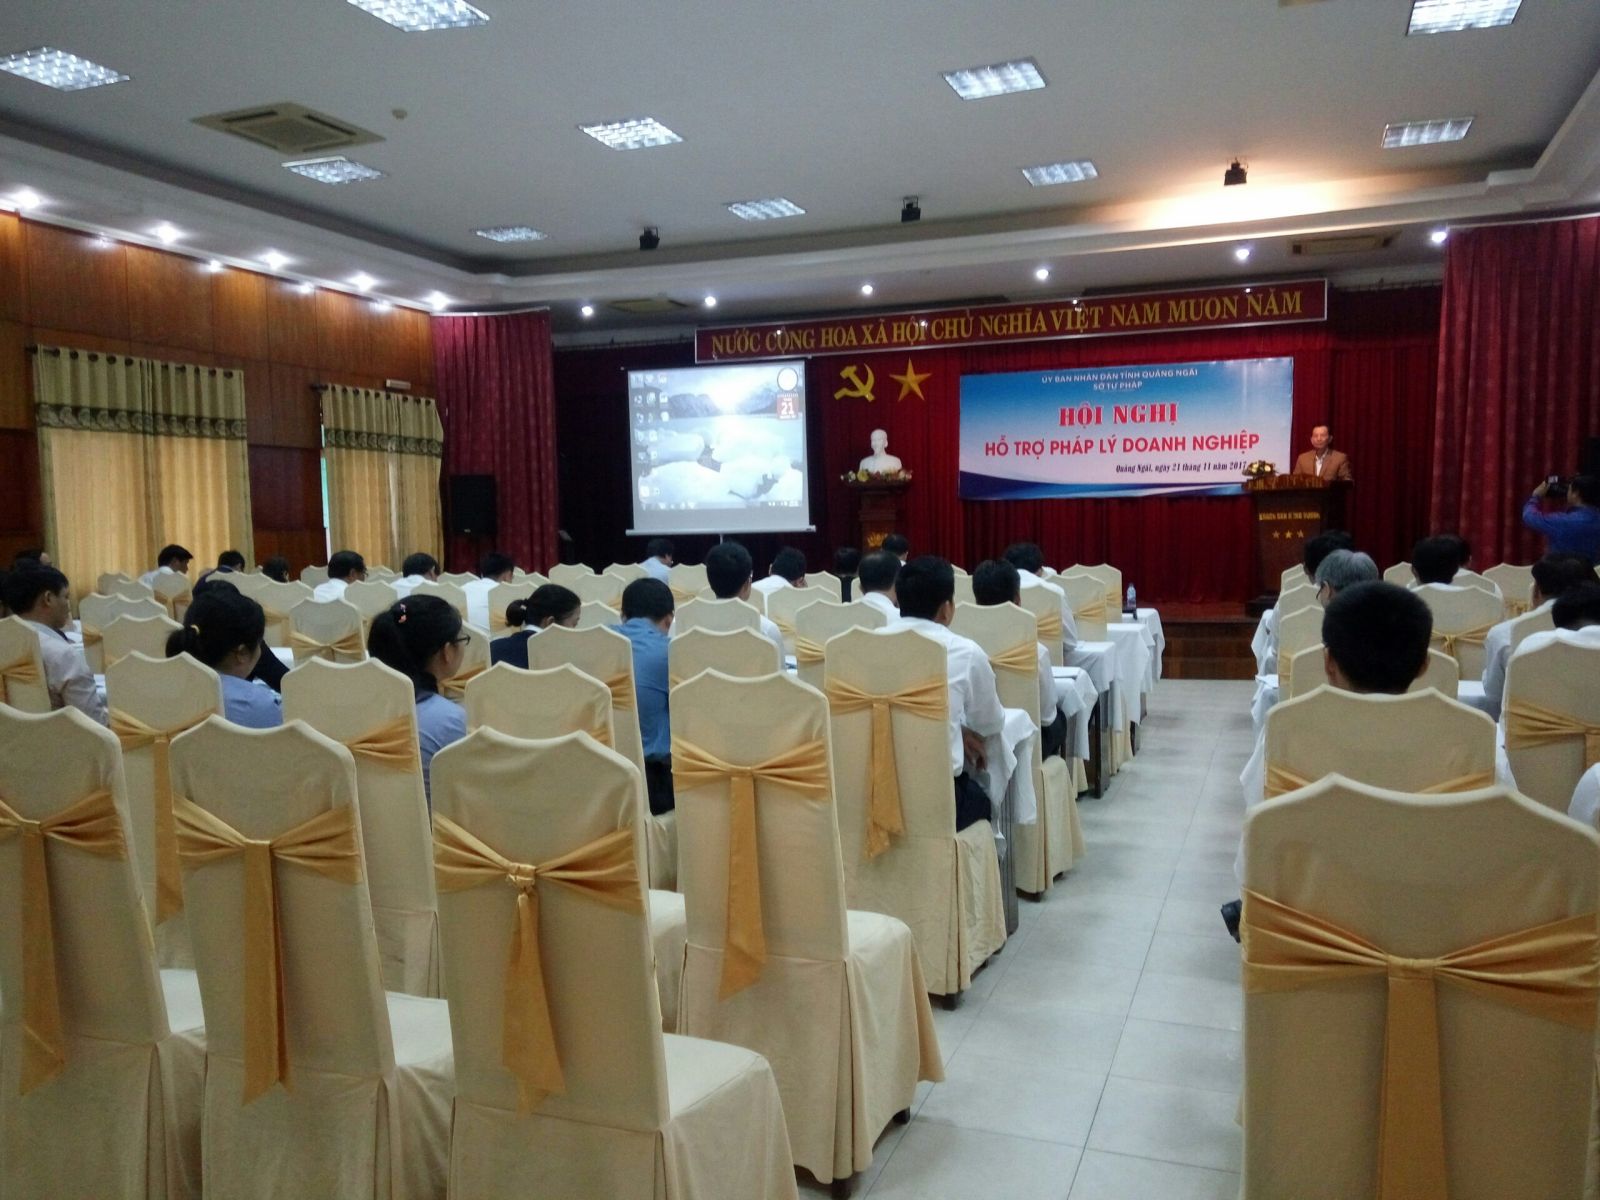 Hội nghị hỗ trợ pháp lý tỉnh Quảng Ngãi tổ chức tại Khách sạn Hùng Vương - Quảng Ngãi